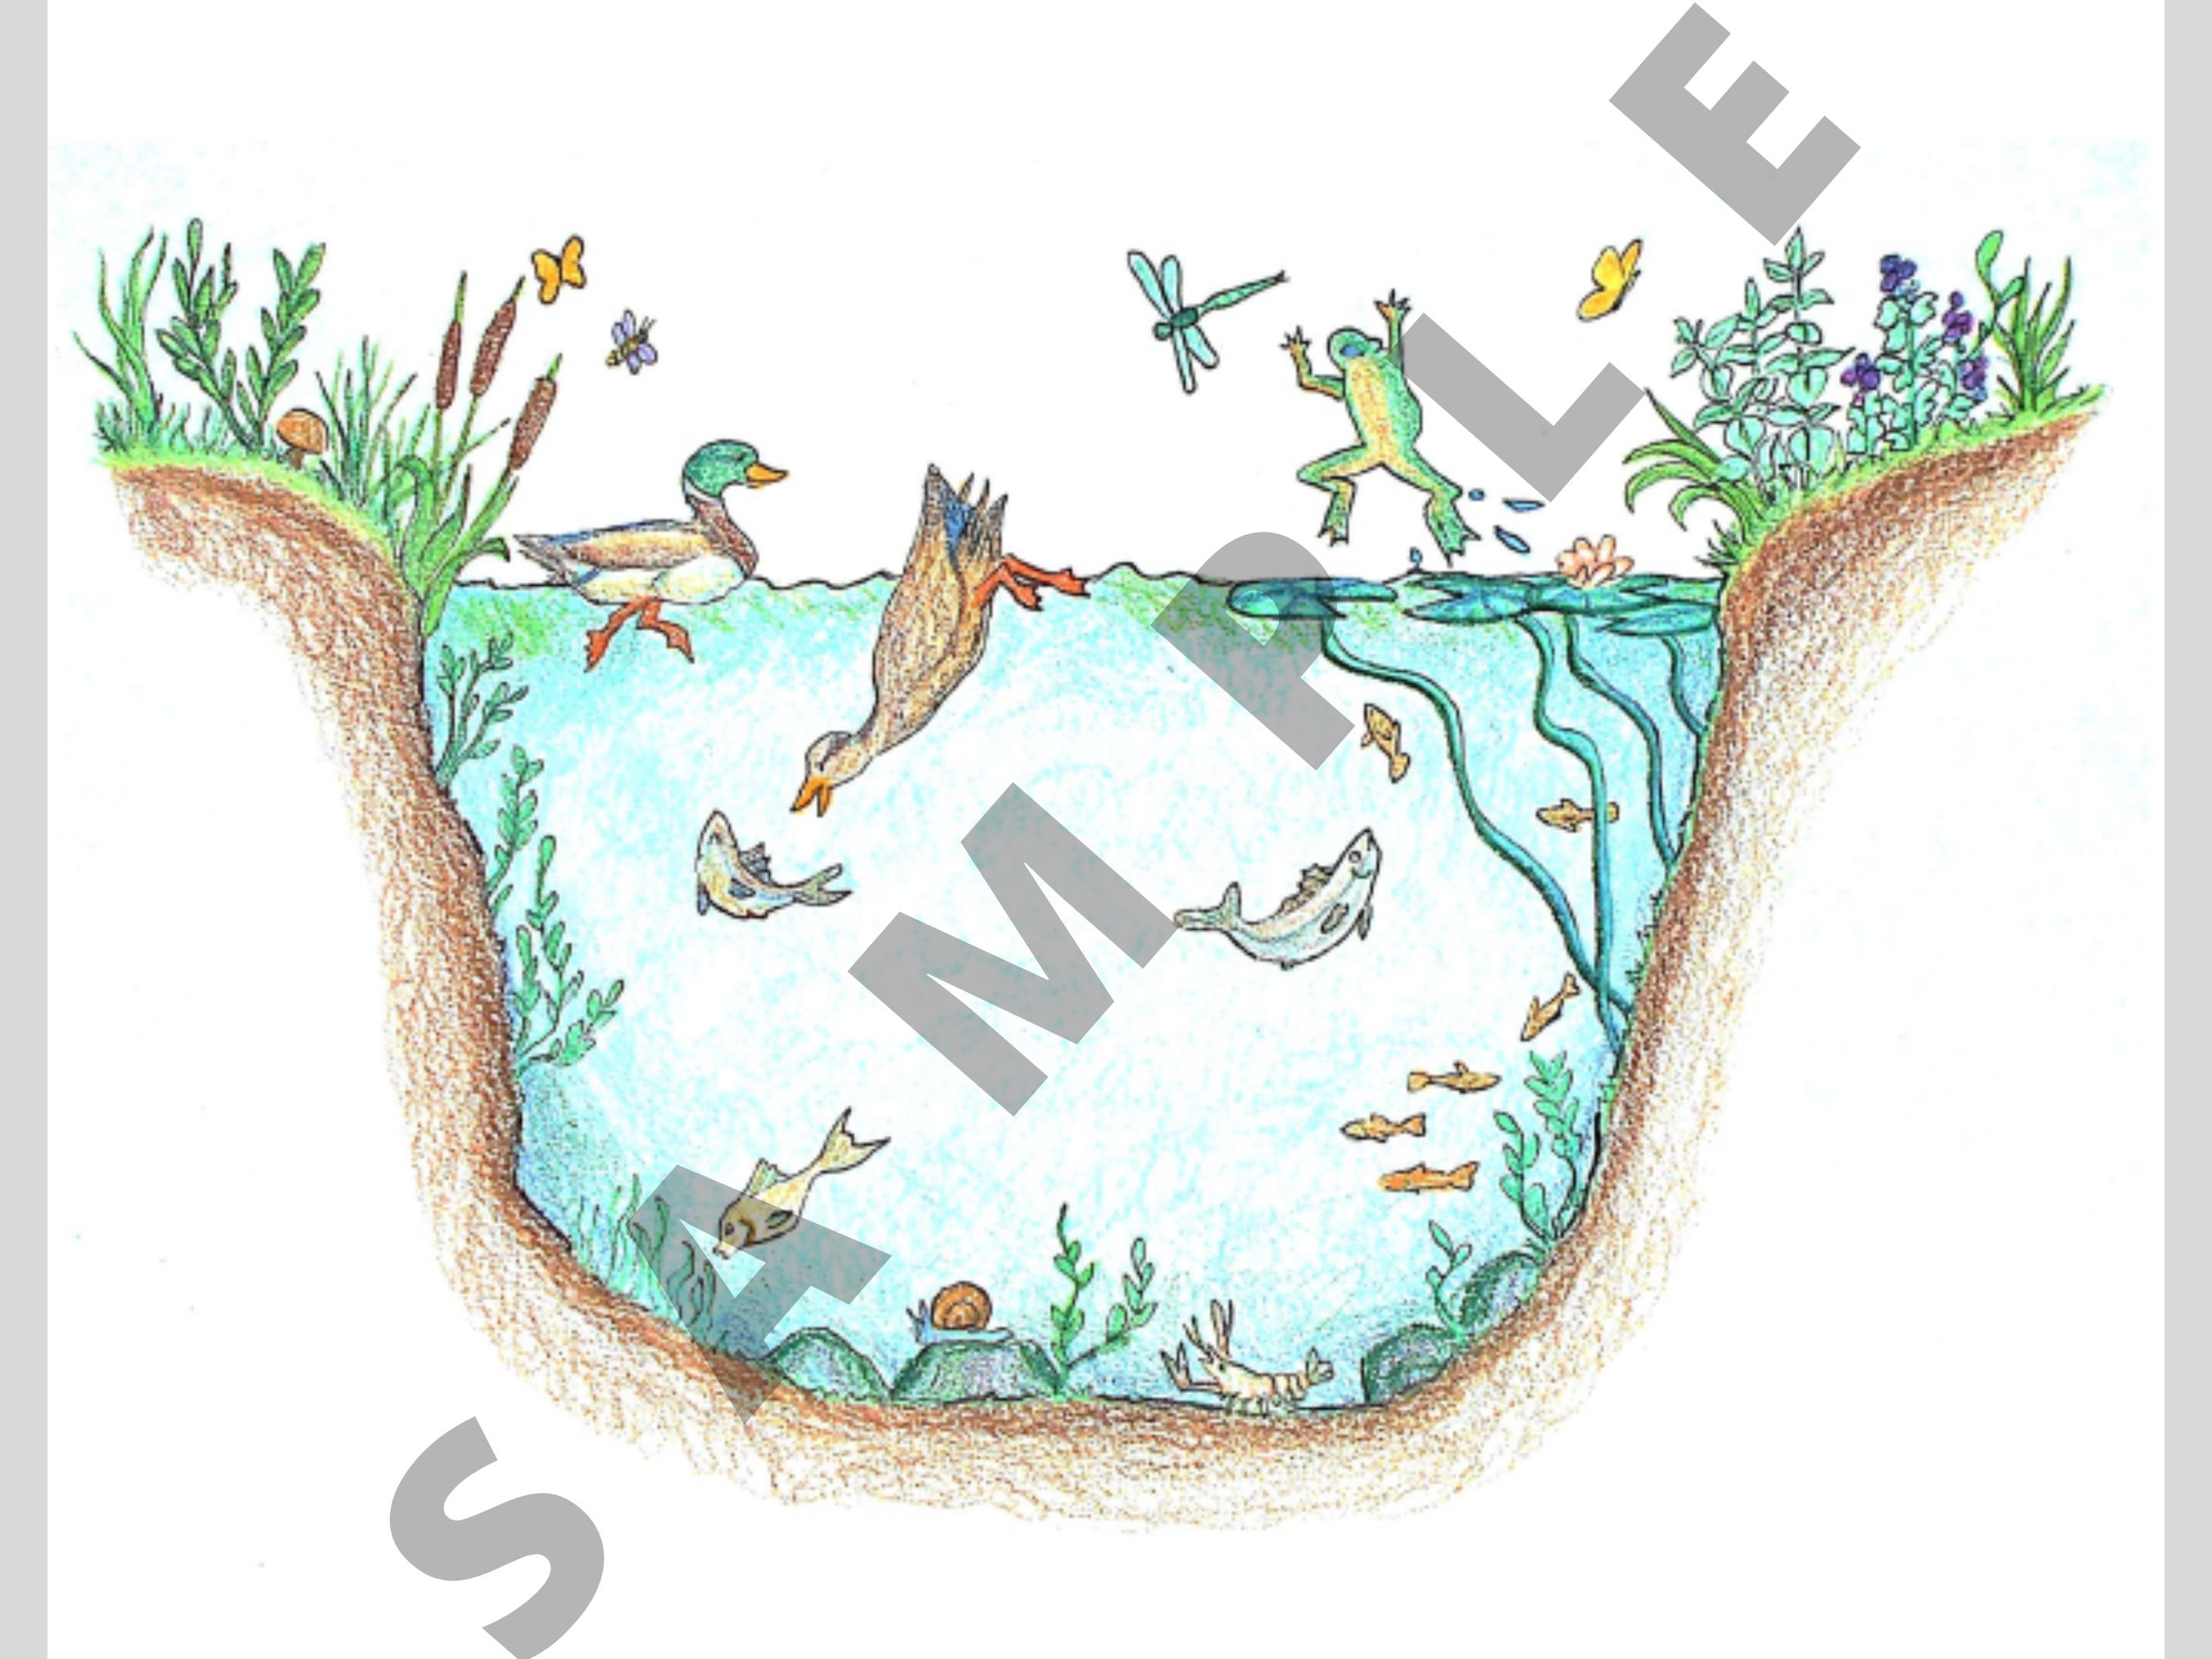 how to draw pond ecosystem/draw ecosystem of pond - YouTube